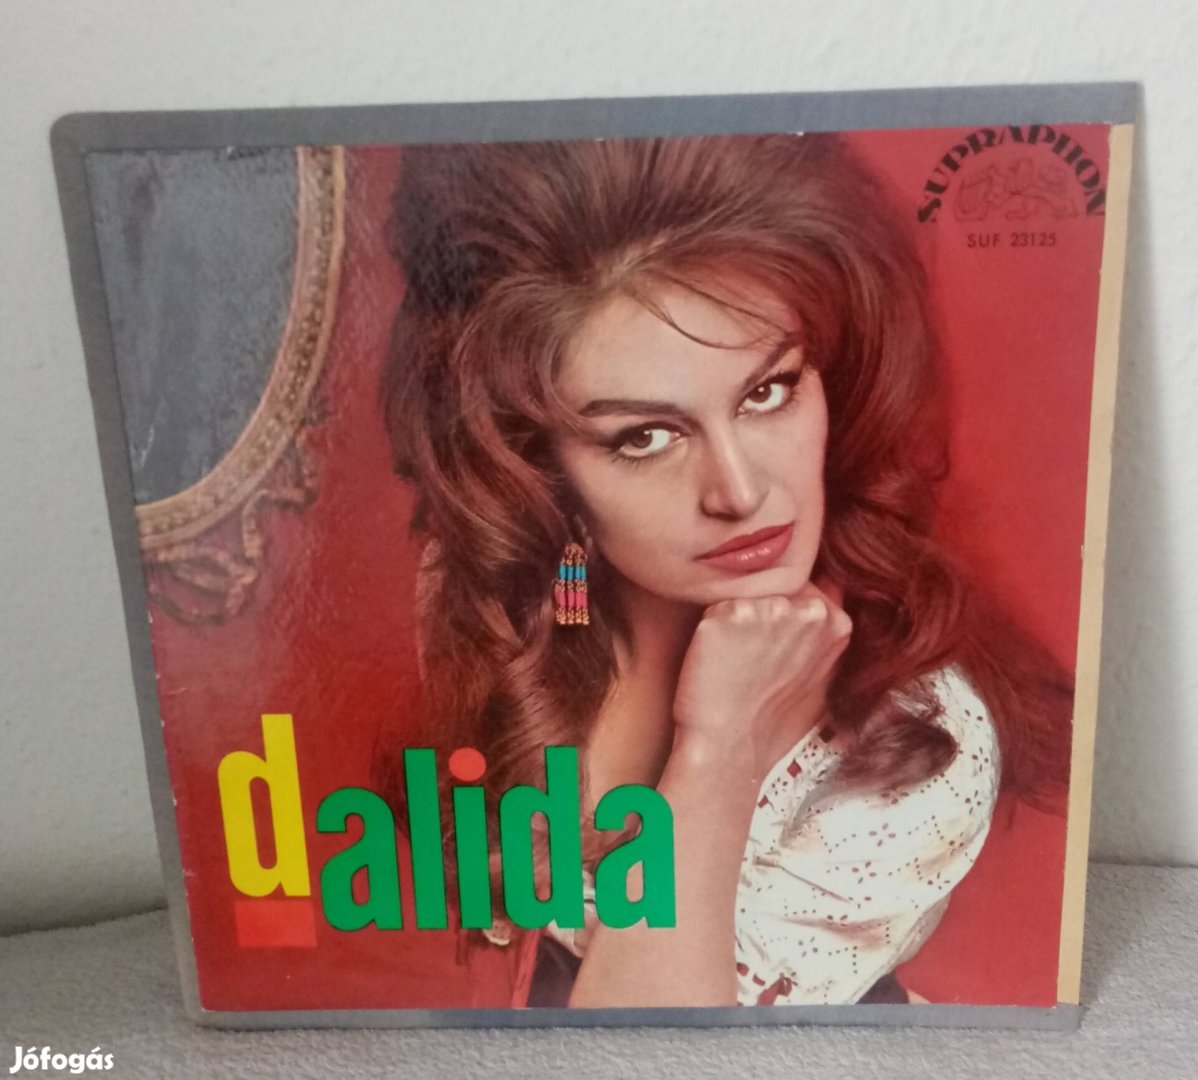 Dalida (1953) ritka bakelit lemez eladó 